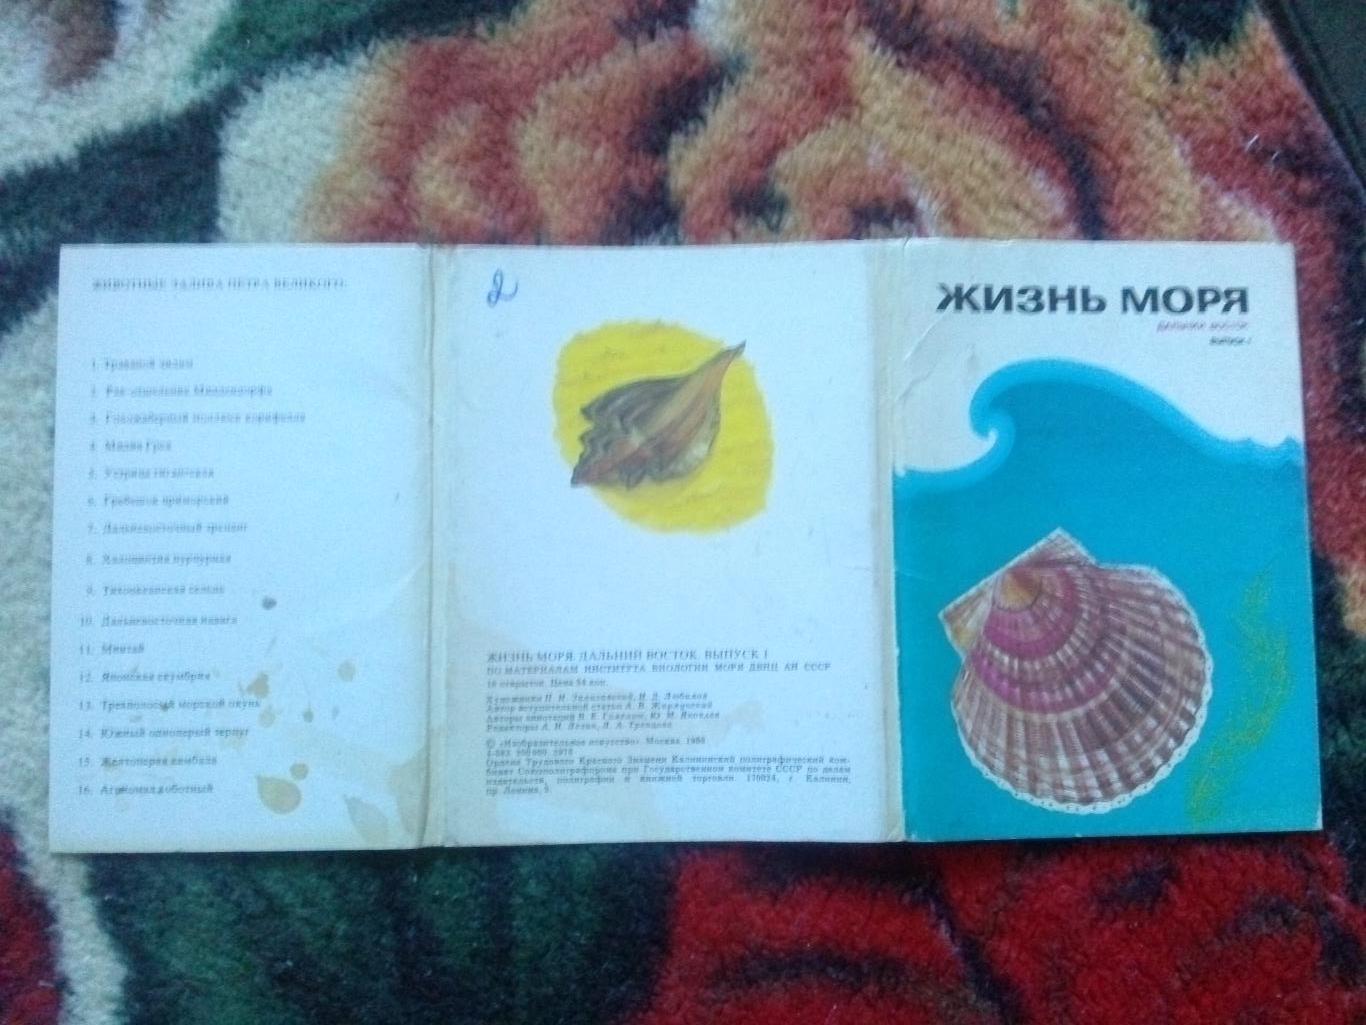 Жизнь моря (Дальний Восток) 1986 г. полный набор - 16 открыток (Рыба , моллюски) 1